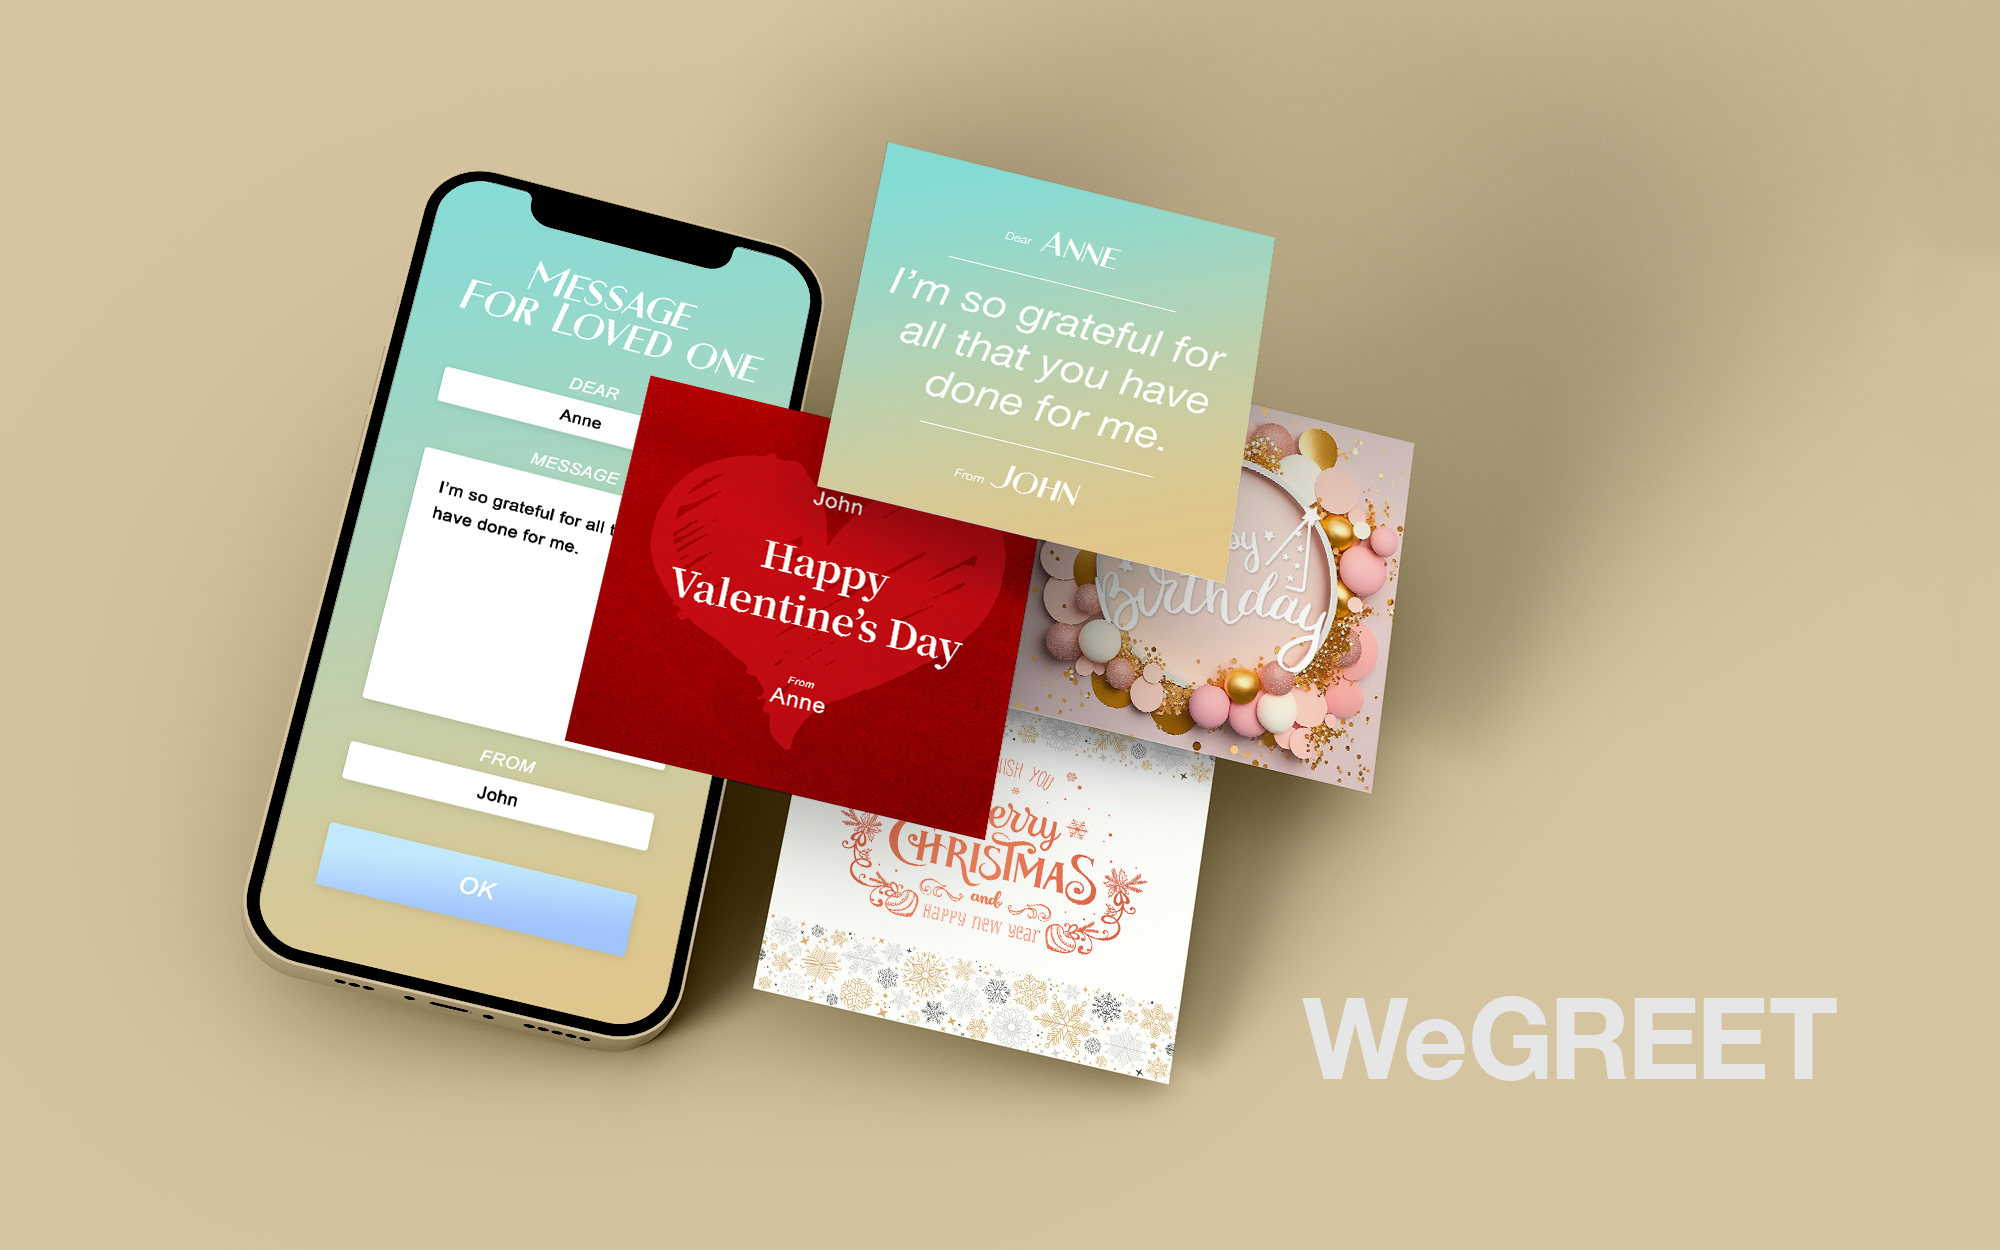 簡単な操作で相手に瞬時に贈れるグリーティングカードの作成が可能なデジタルギフトメッセージサービス「WeGREET」を正式リリース